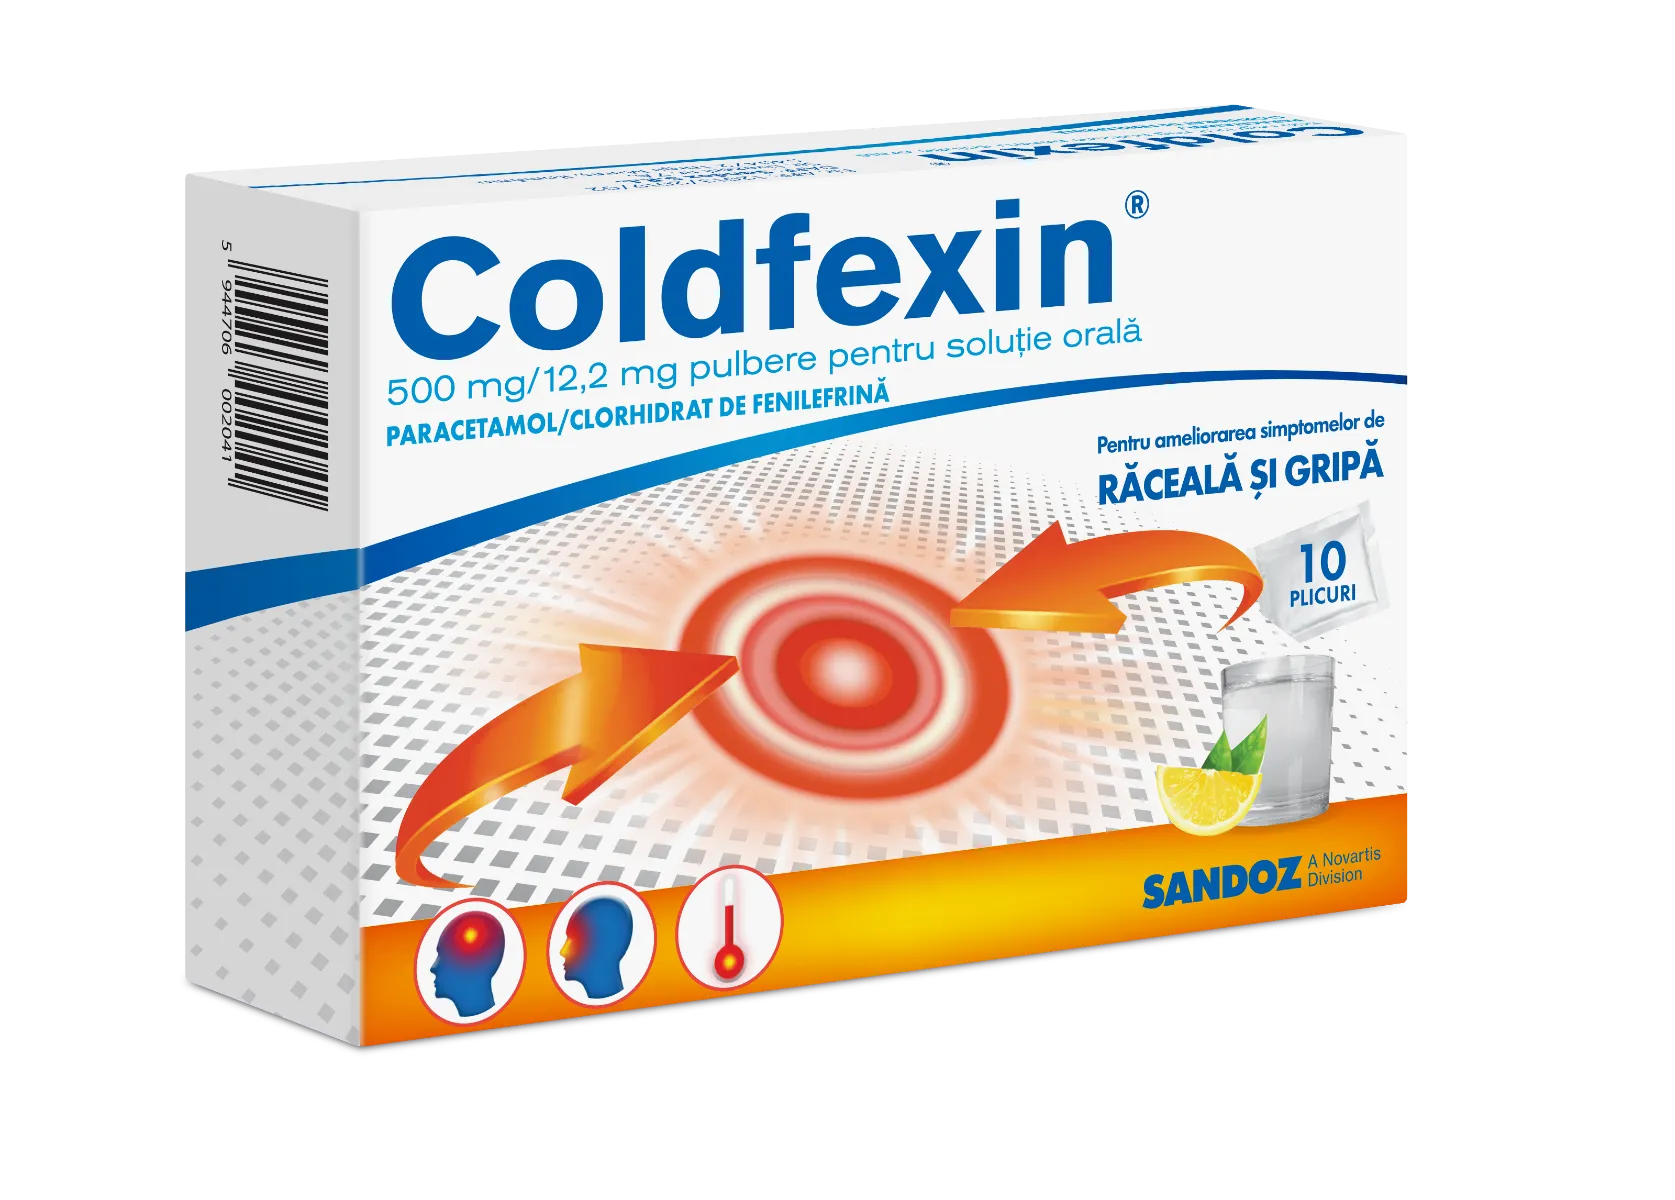 Coldfexin 500 mg/12.2 mg pulbere pentru solutie orala, 10 plicuri, Sandoz